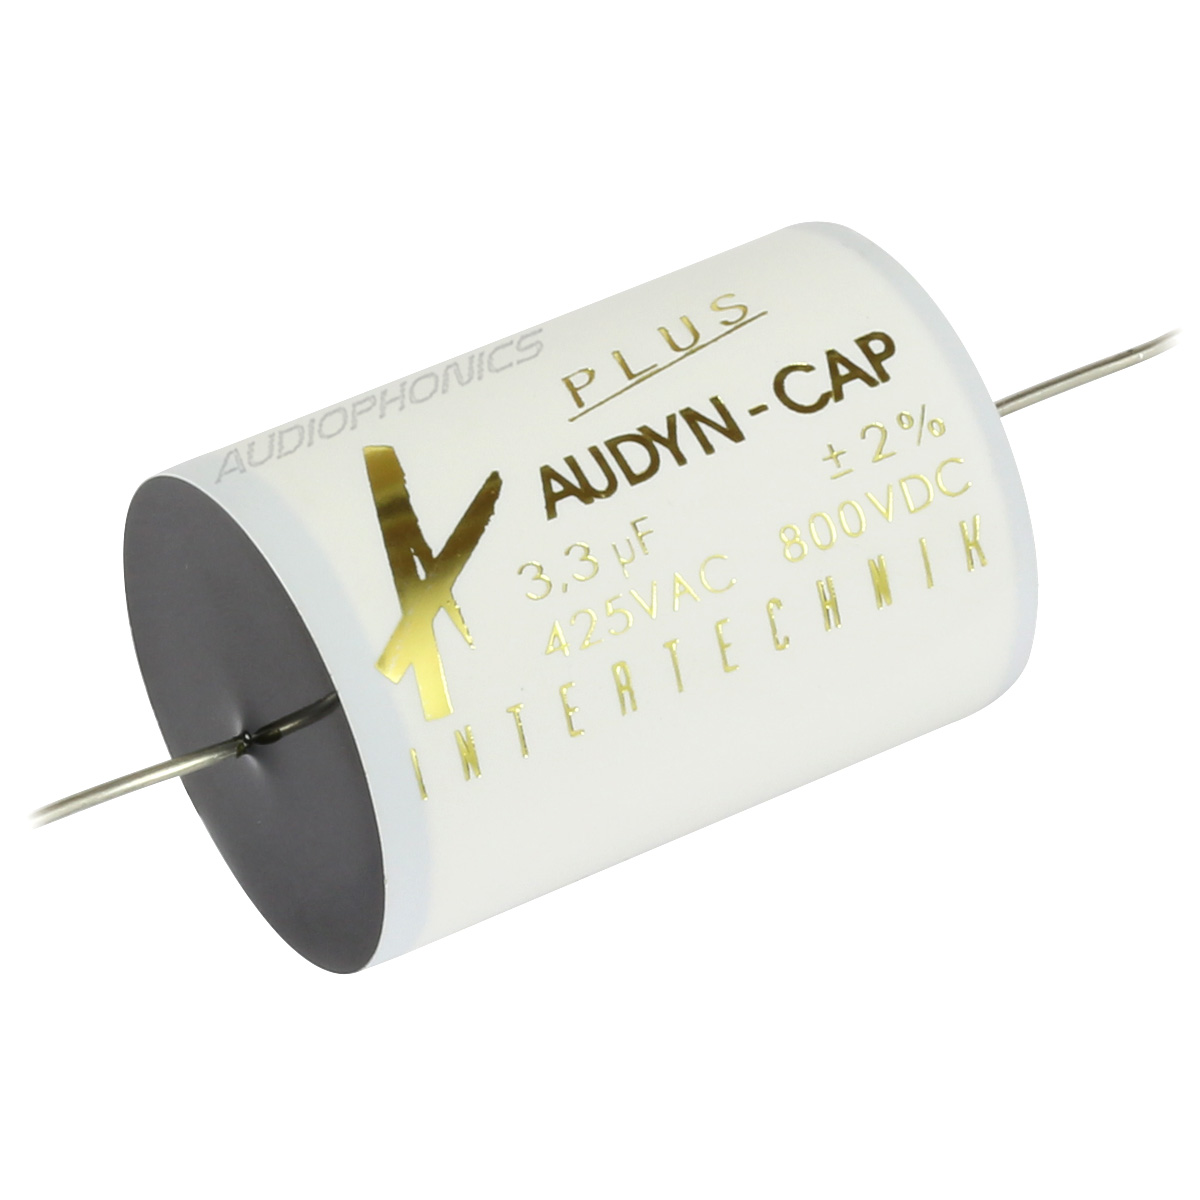 AUDYN CAP PLUS Capacitor 800V 0.68µF